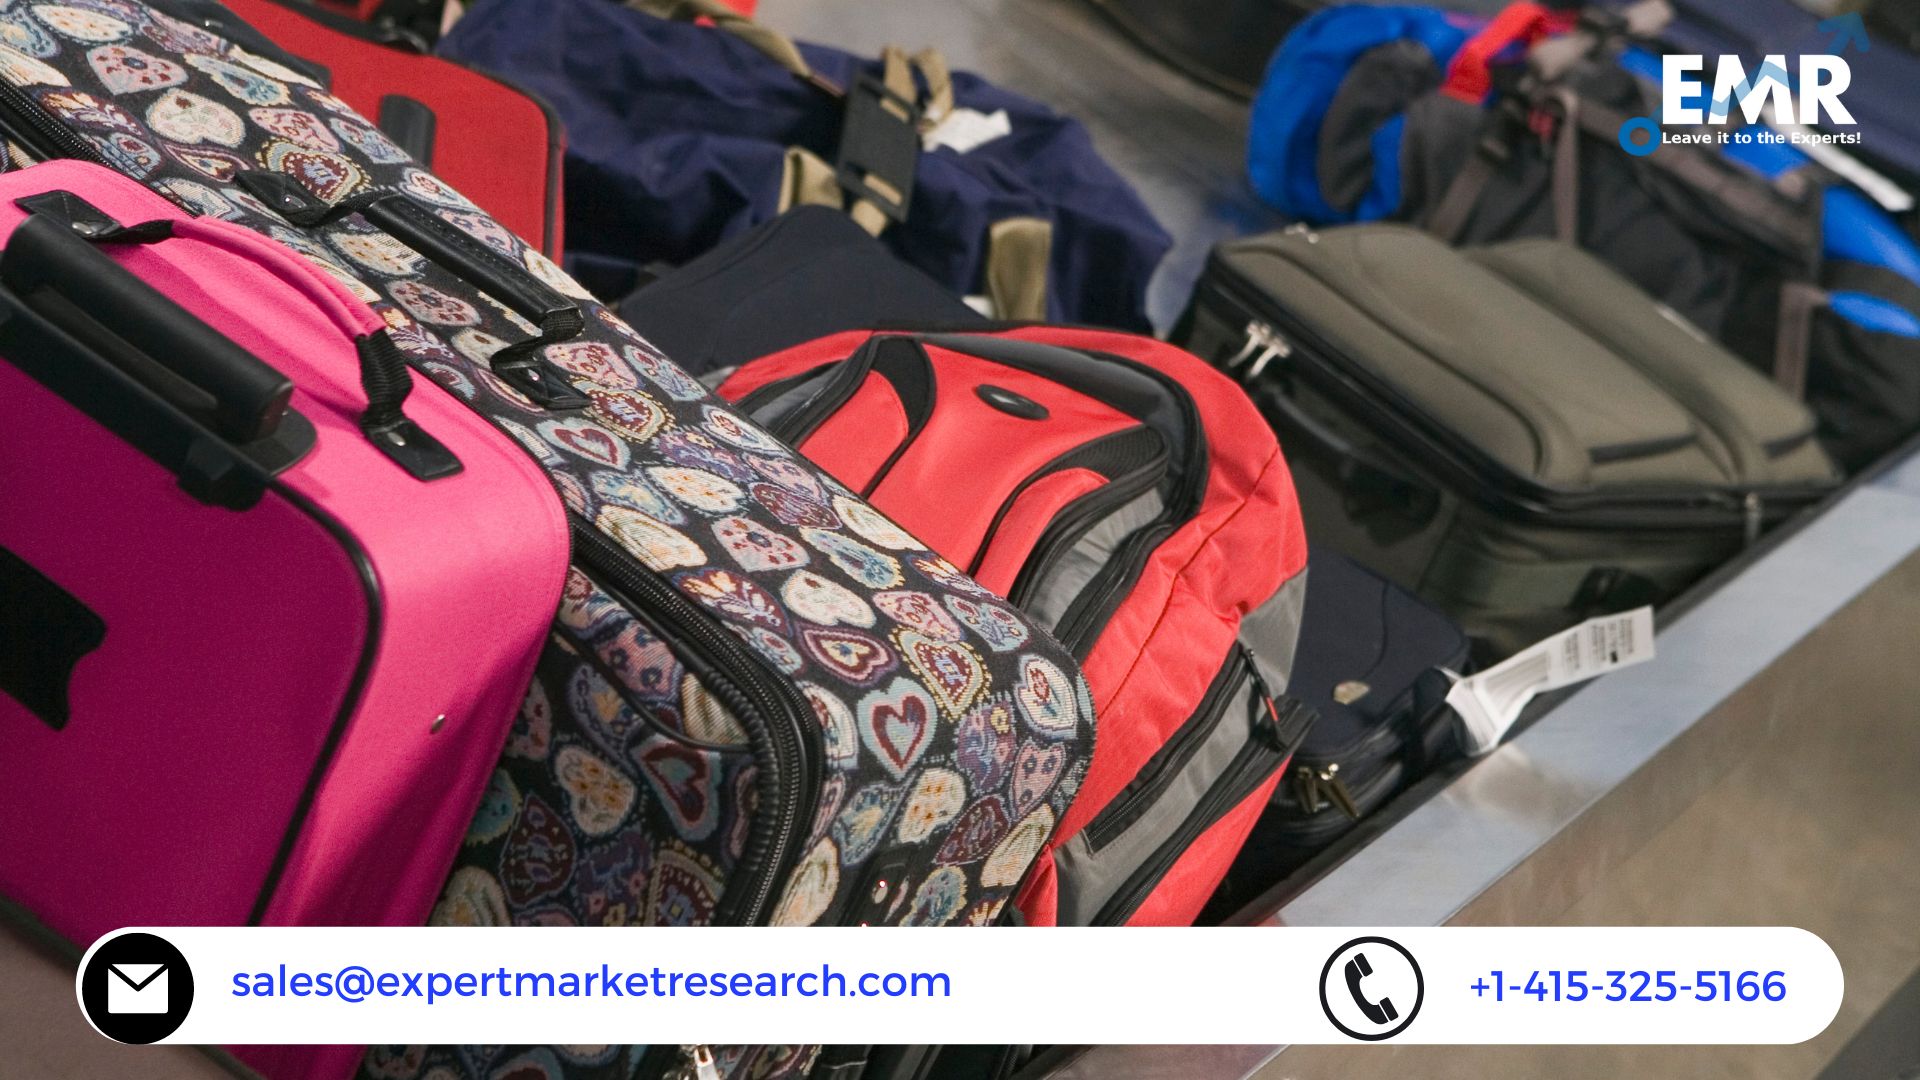 Baggage Handling System Market